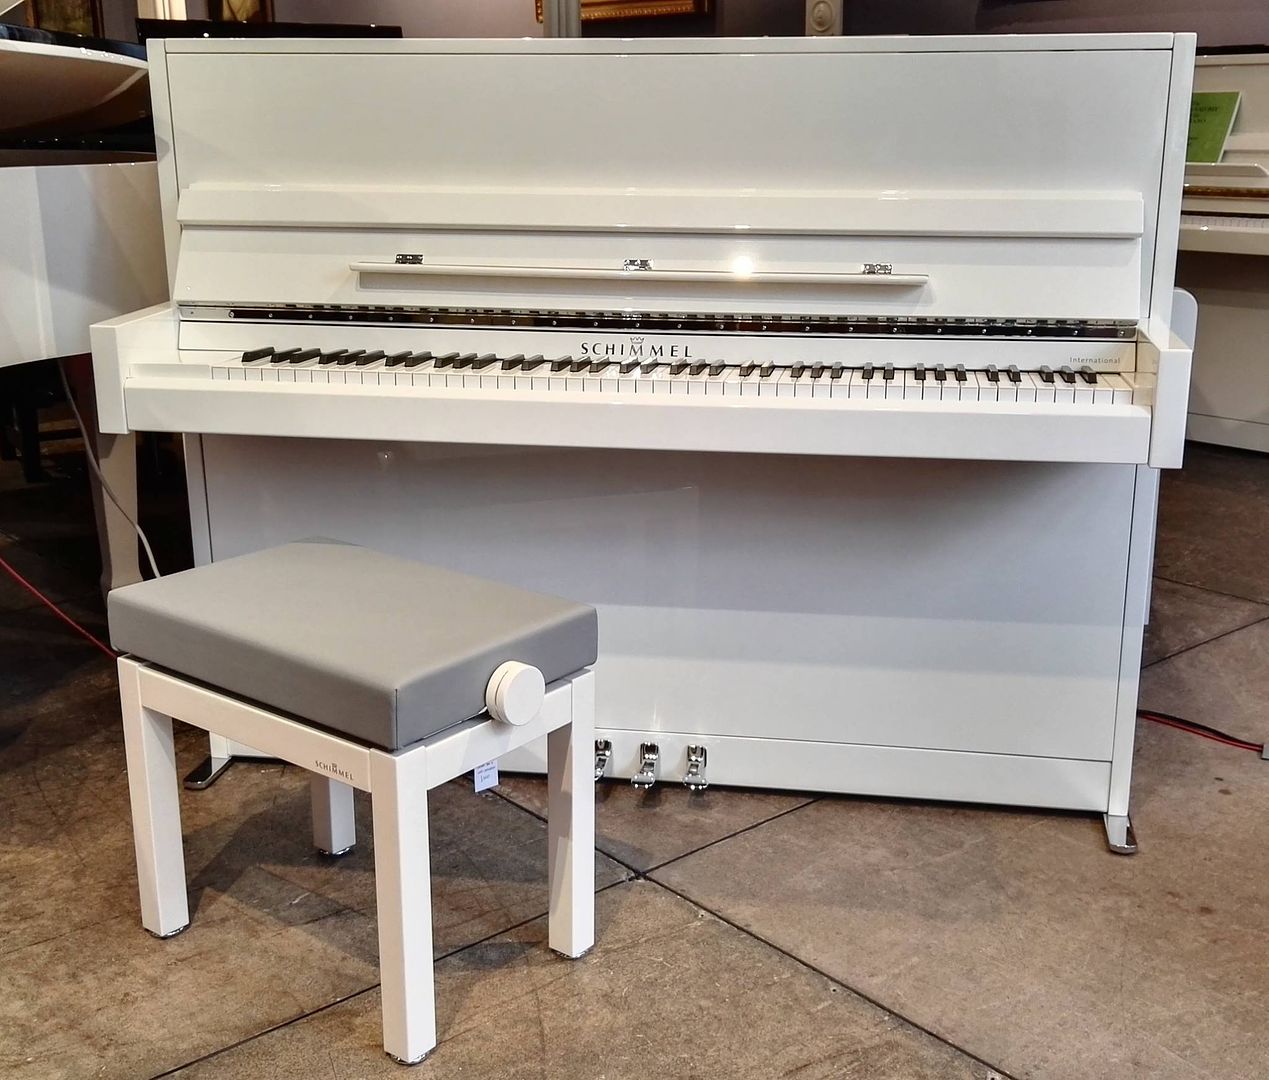 White upright Piano by Schimmel model International I115M